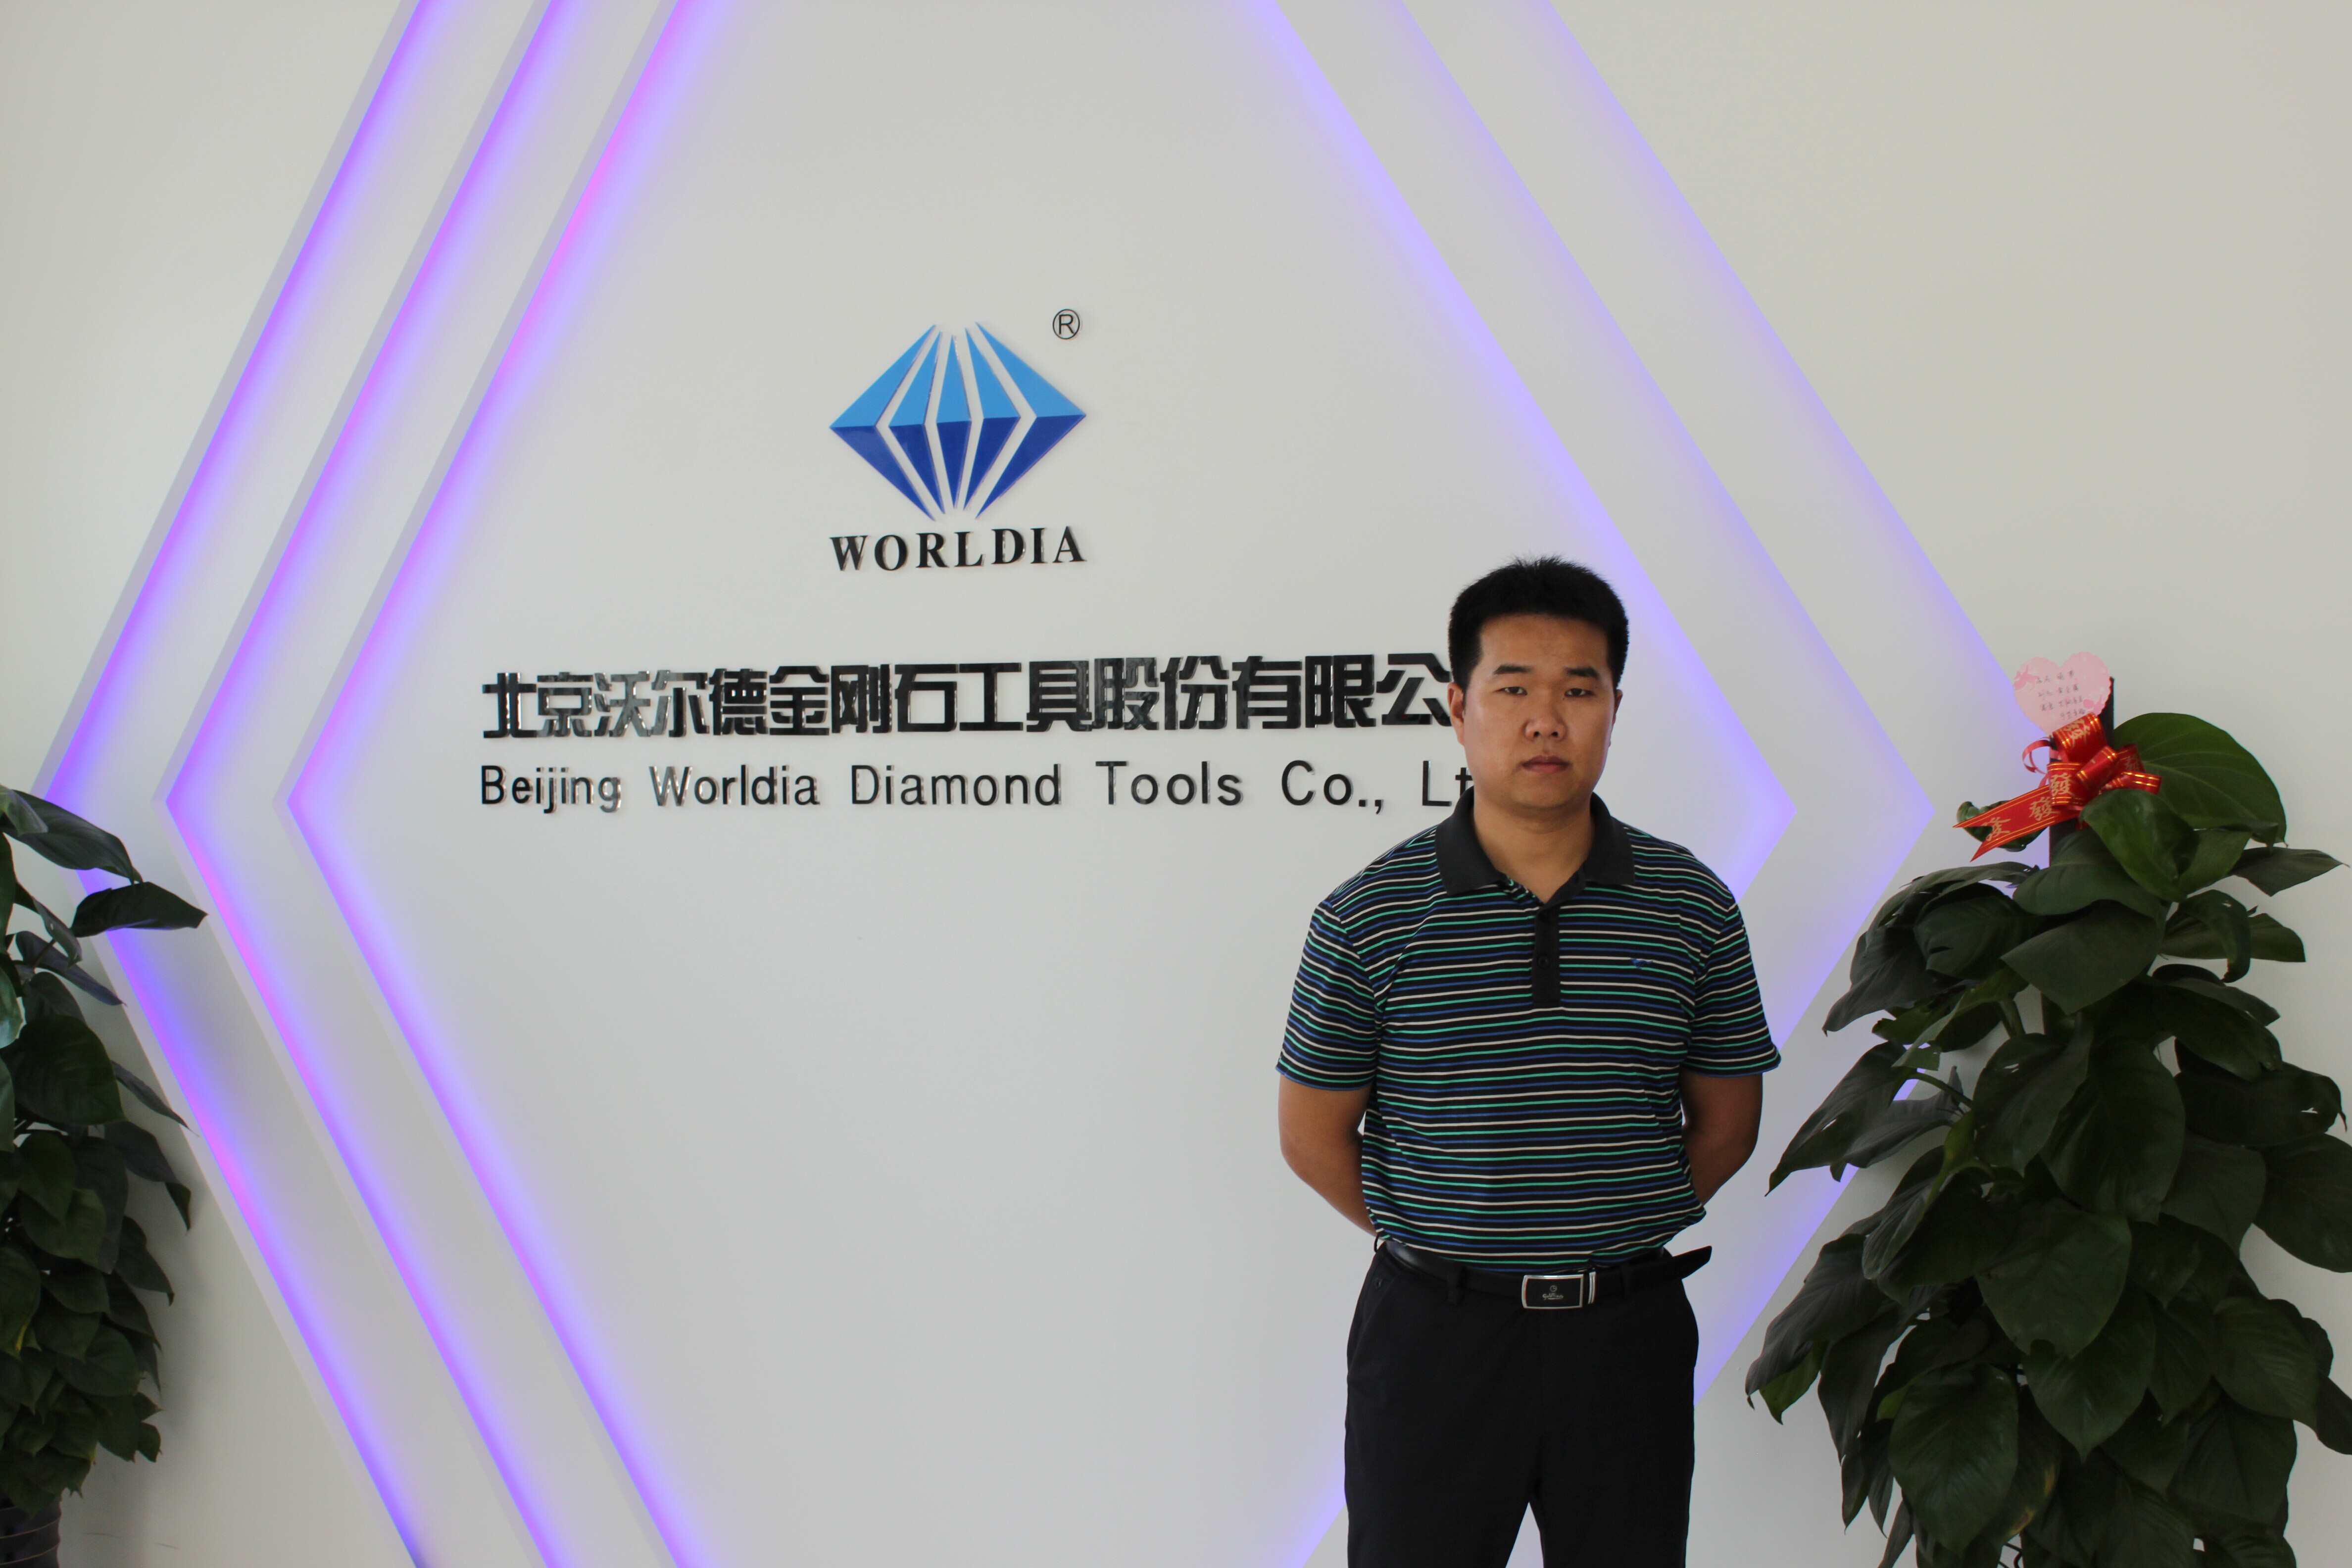 北京沃尔德金刚石工具股份有限公司副总经理、技术总工唐文林